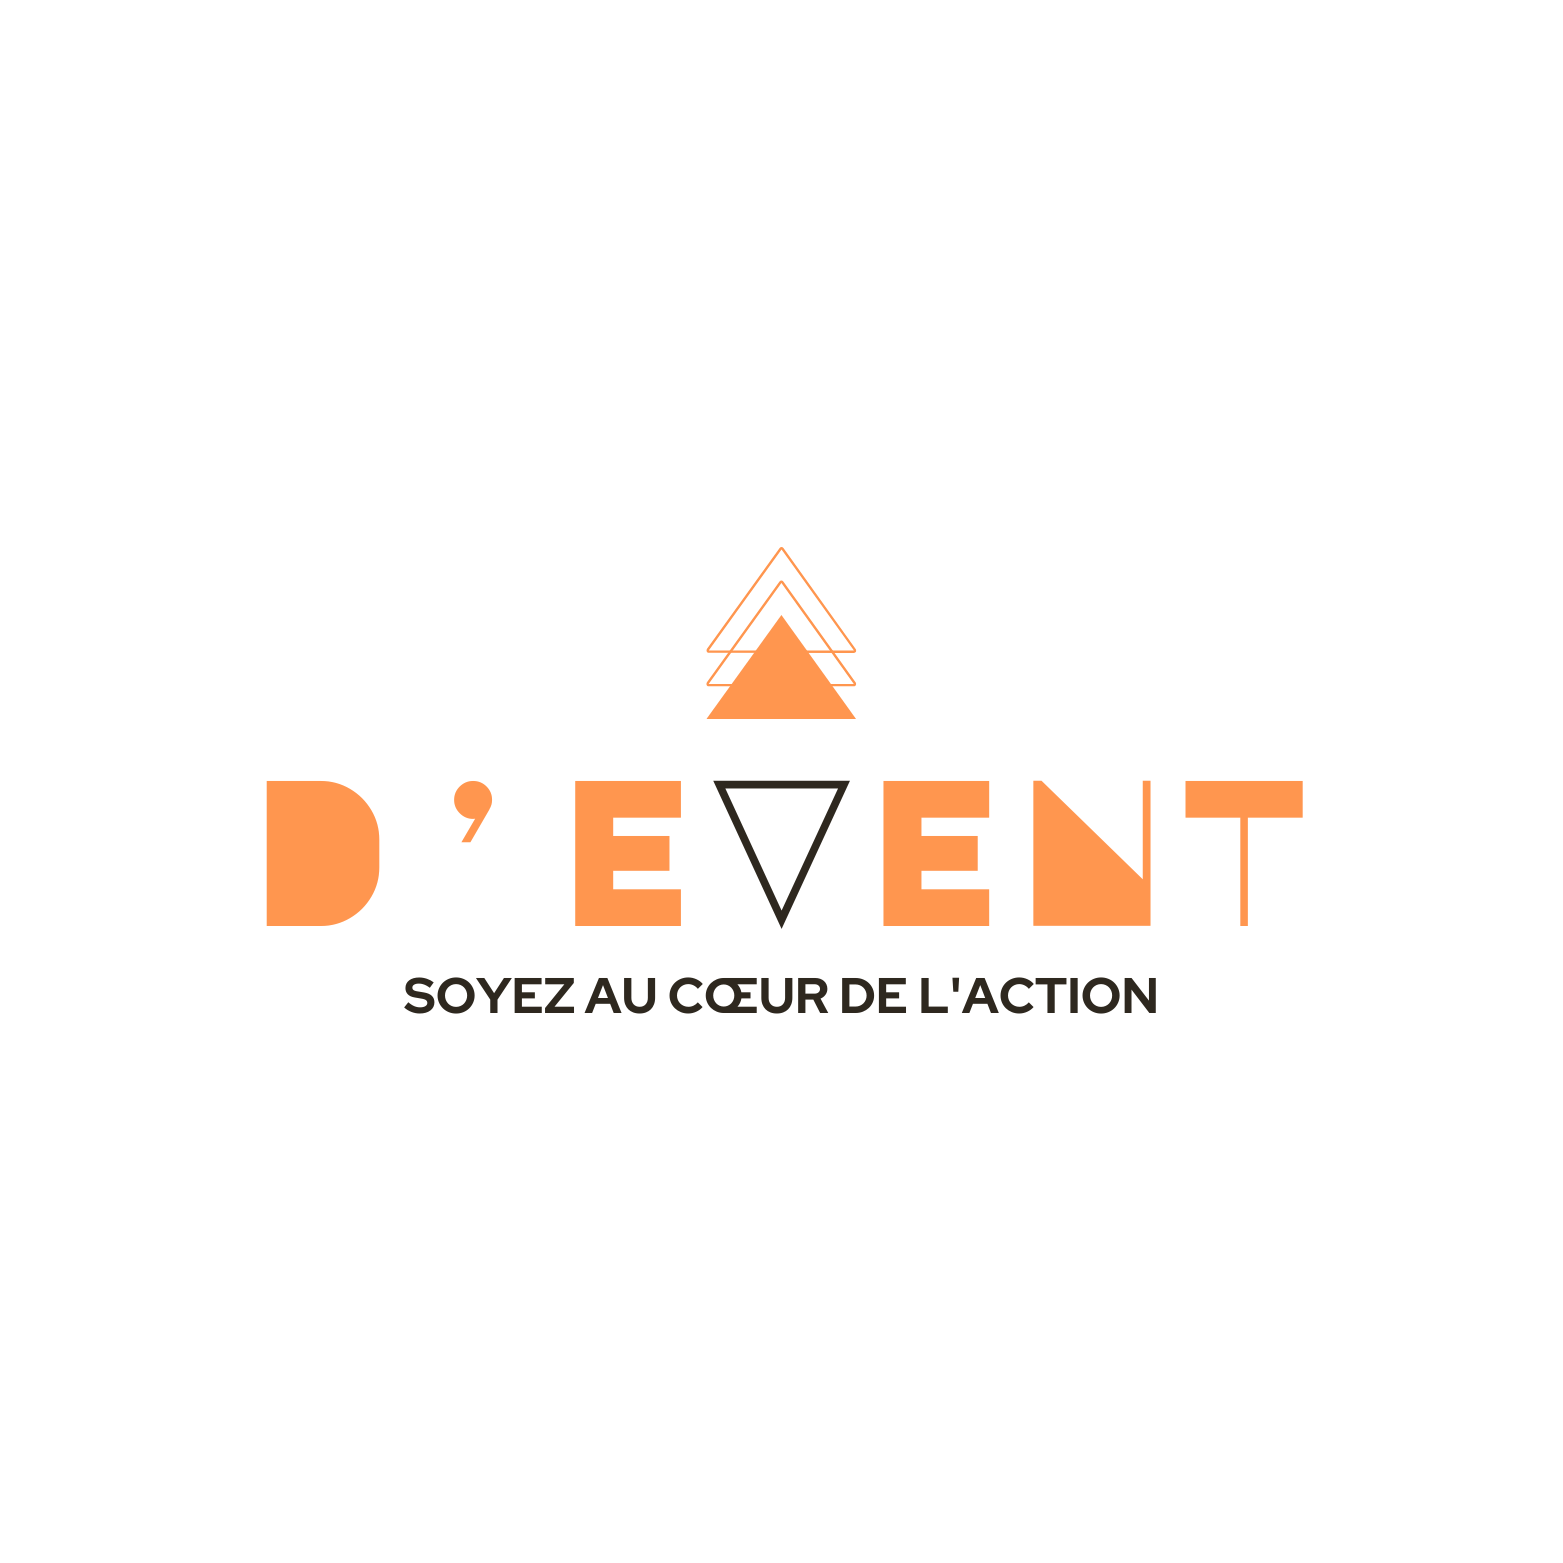 Divert Event